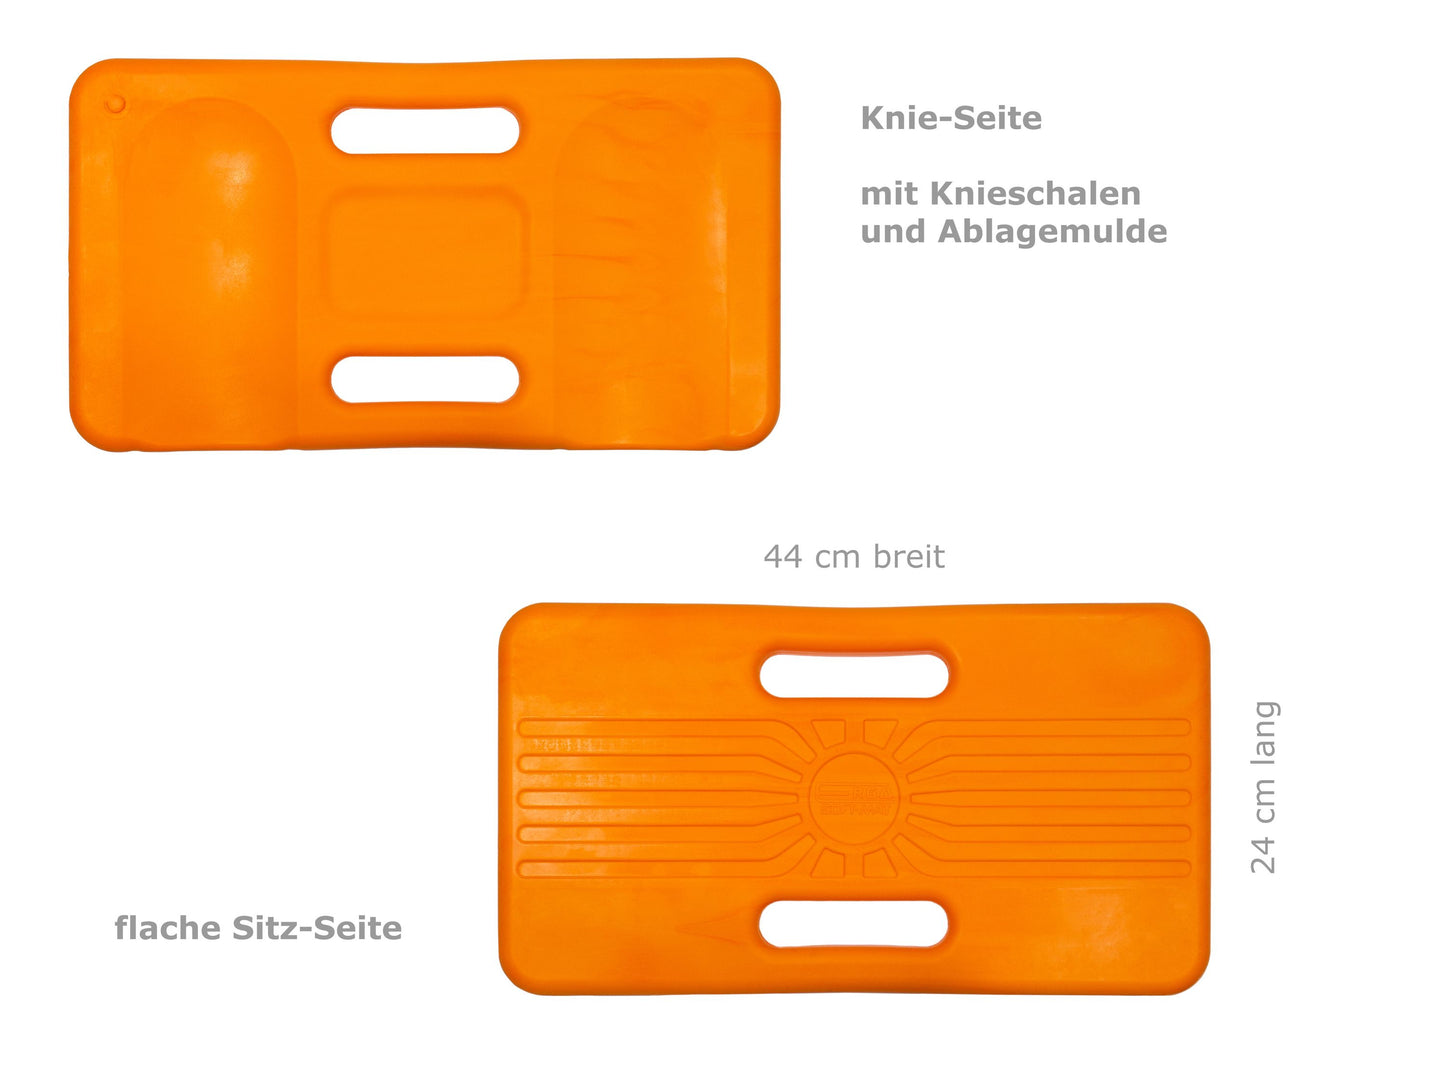 Kniekissen / Sitzkissen 44x24 cm, aus PU-Schaum